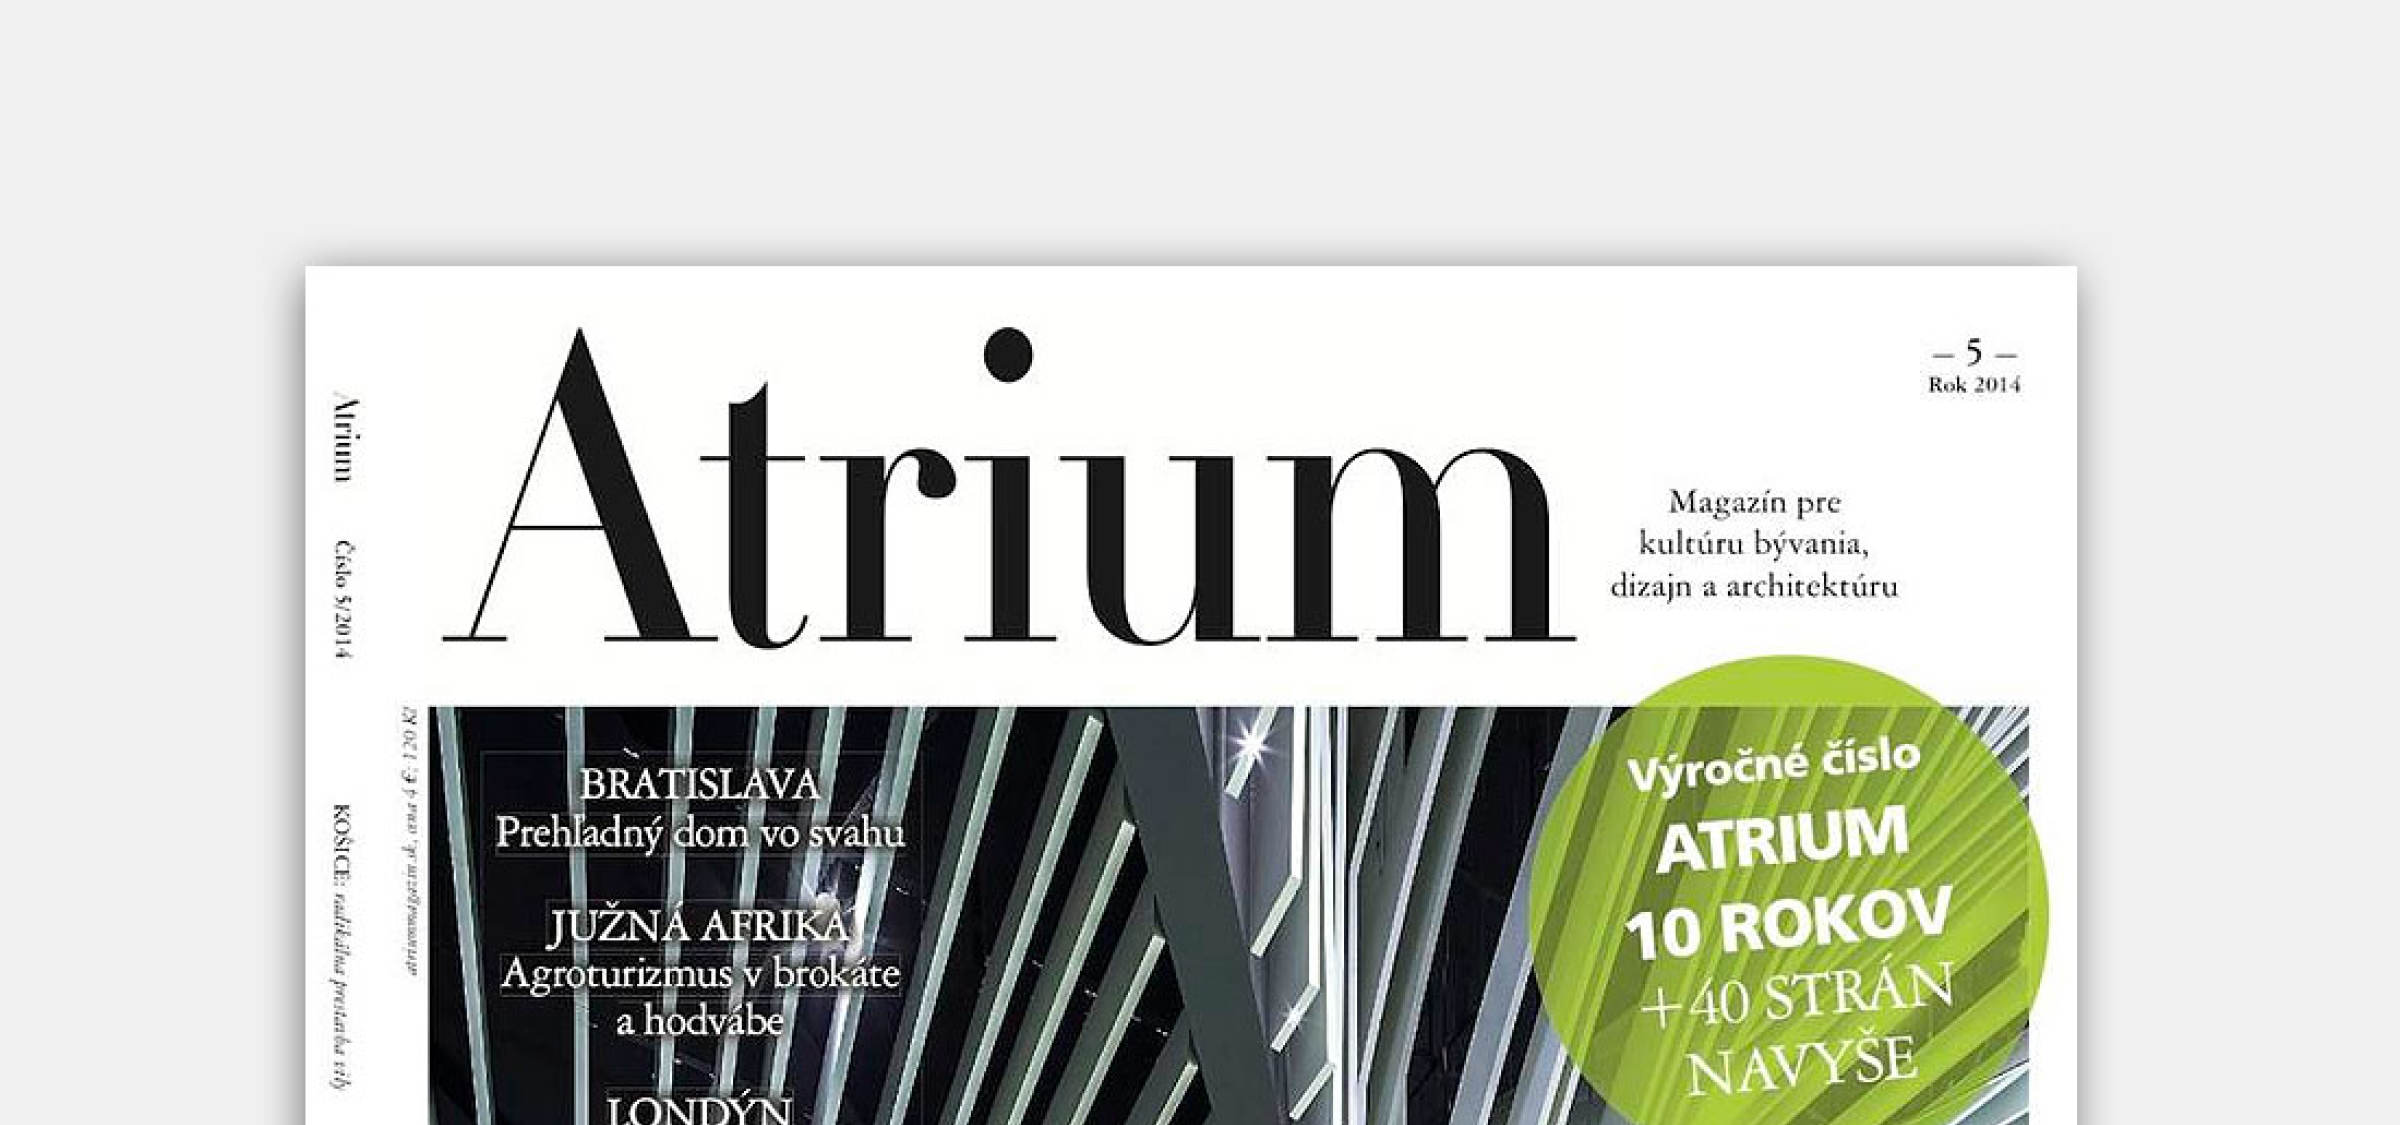 Vila M v novom čísle Atrium magazínu | Aktuálne | Atrium Architekti